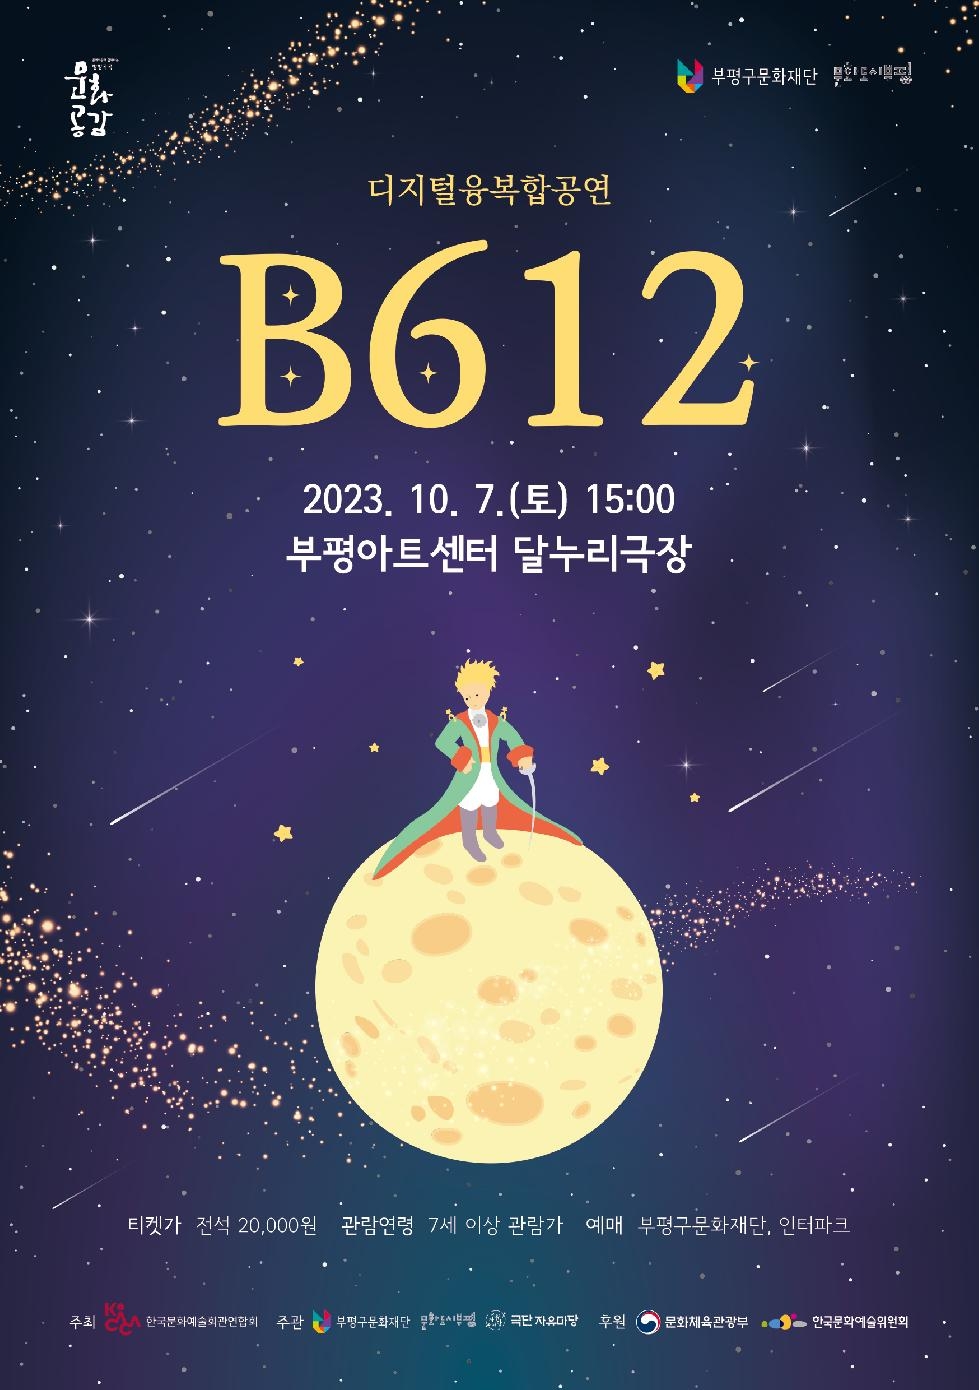 인천 부평구 문화재단, 디지털 입체공연으로 변신한 어린왕자‘B612’ 선보여